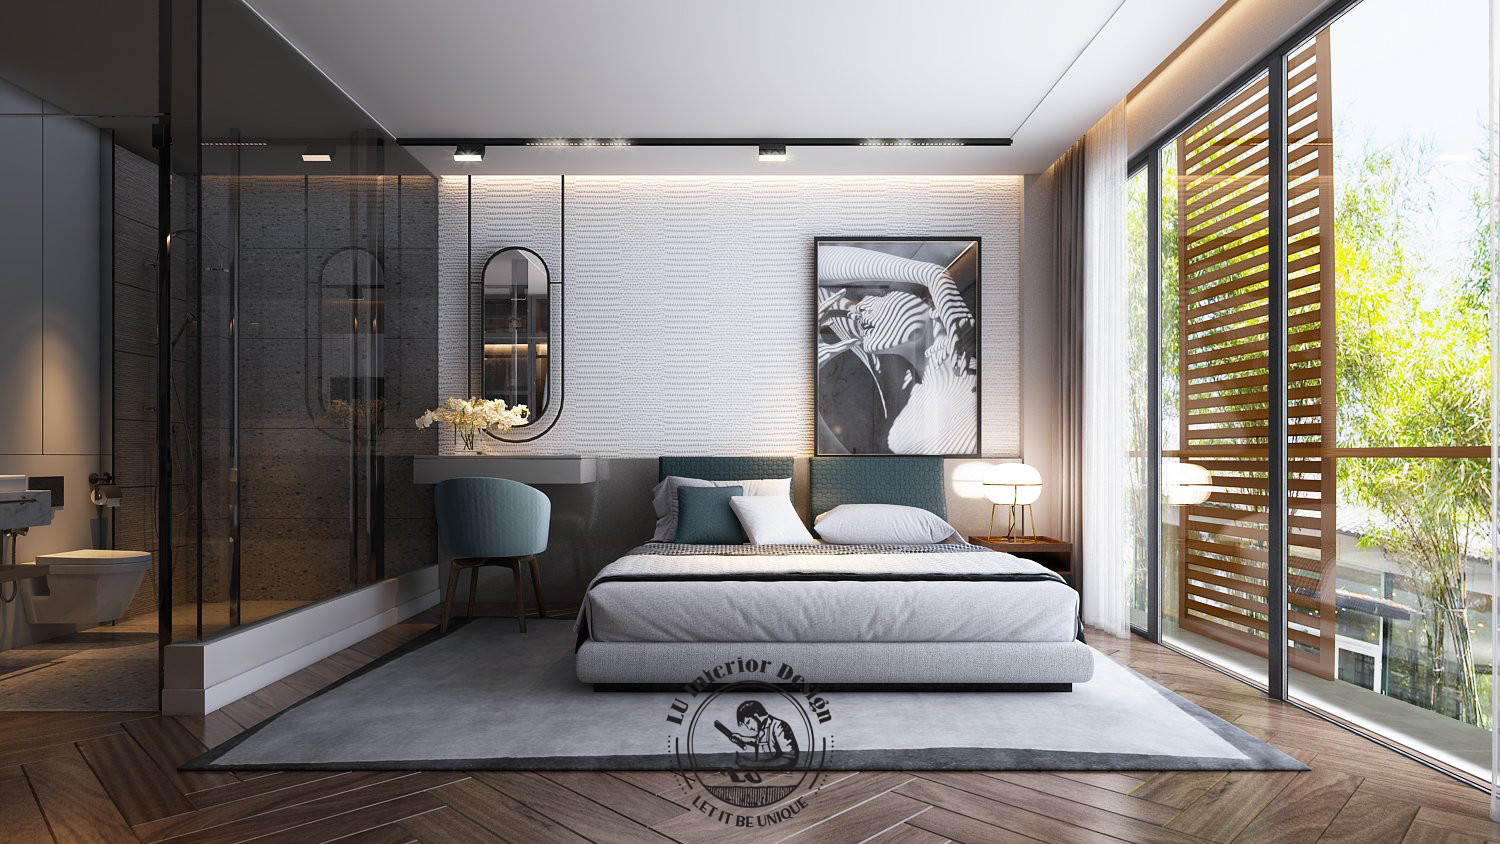 Sử dụng gam màu trung tính cho thiết kế nội thất phòng ngủ hiện đại | Dự án nhà phố Townhouse Vũng Tàu - LU Design thực hiện.